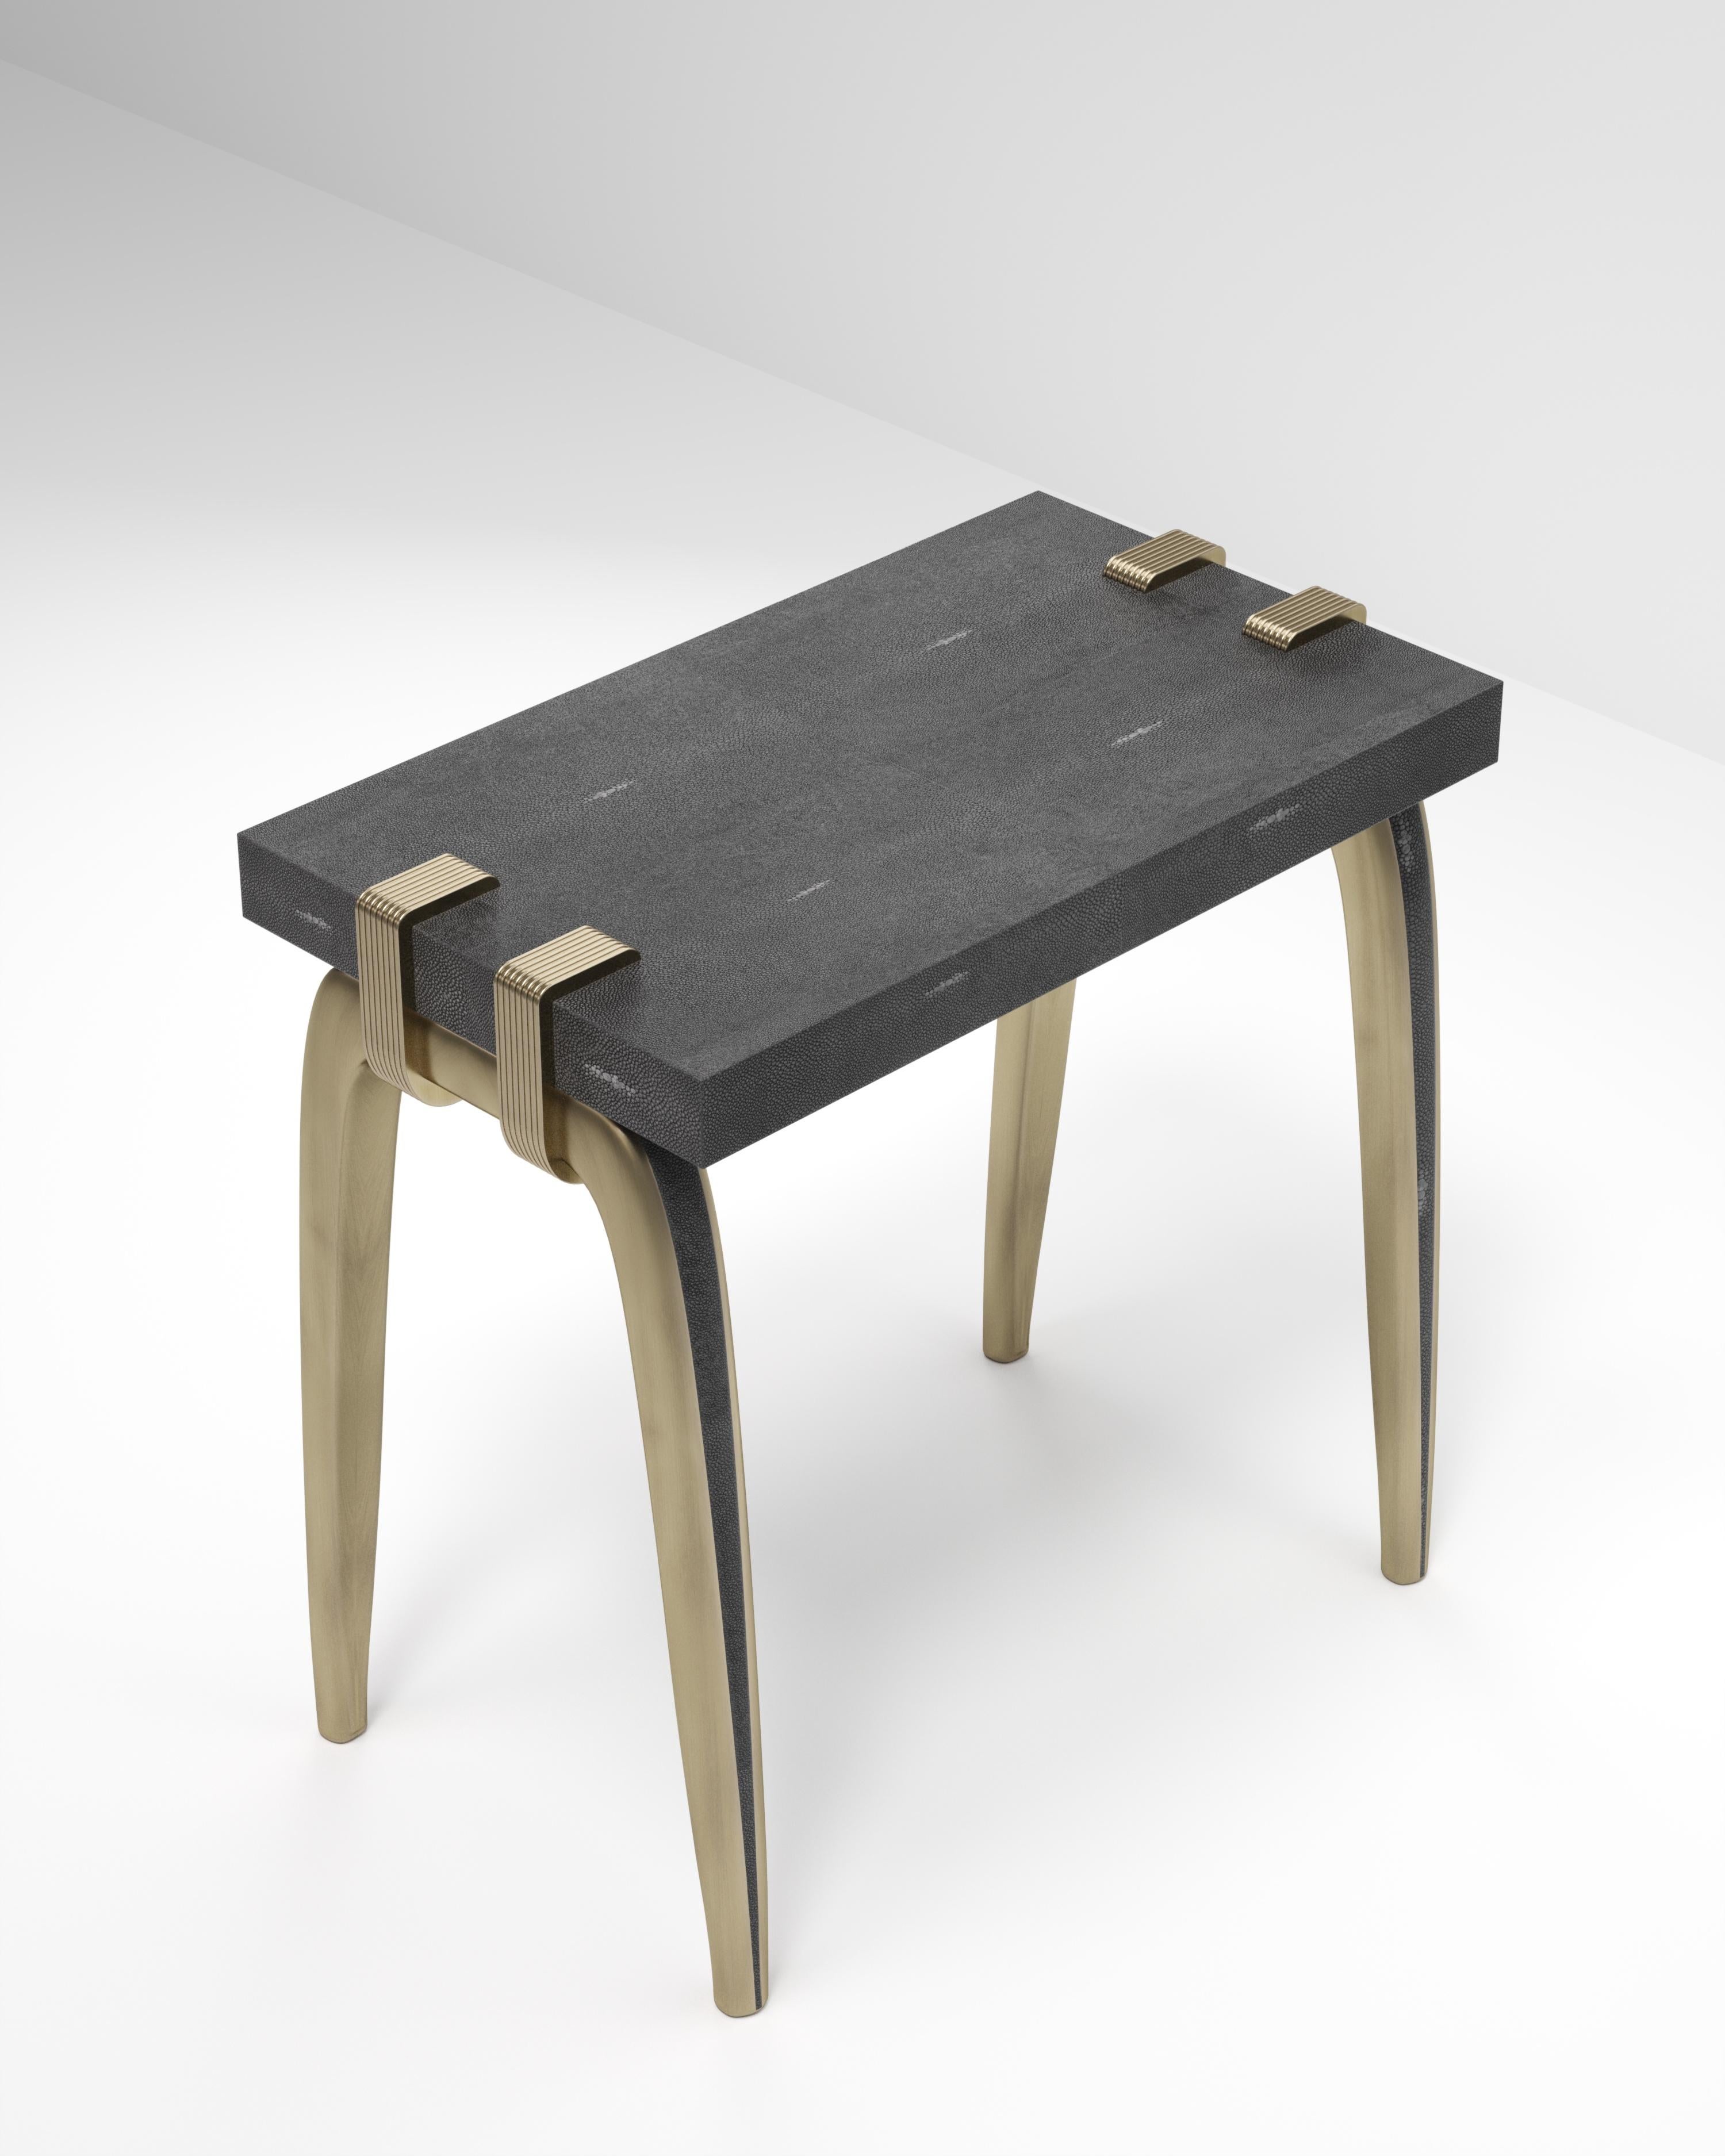 La table d'appoint Sonia est un modèle emblématique d'Augousti, qui met en valeur le savoir-faire exquis de la marque. Les pieds s'accrochent sur le côté du plateau rectangulaire en galuchat noir. Cette pièce est un clin d'œil à la période Art-Déco